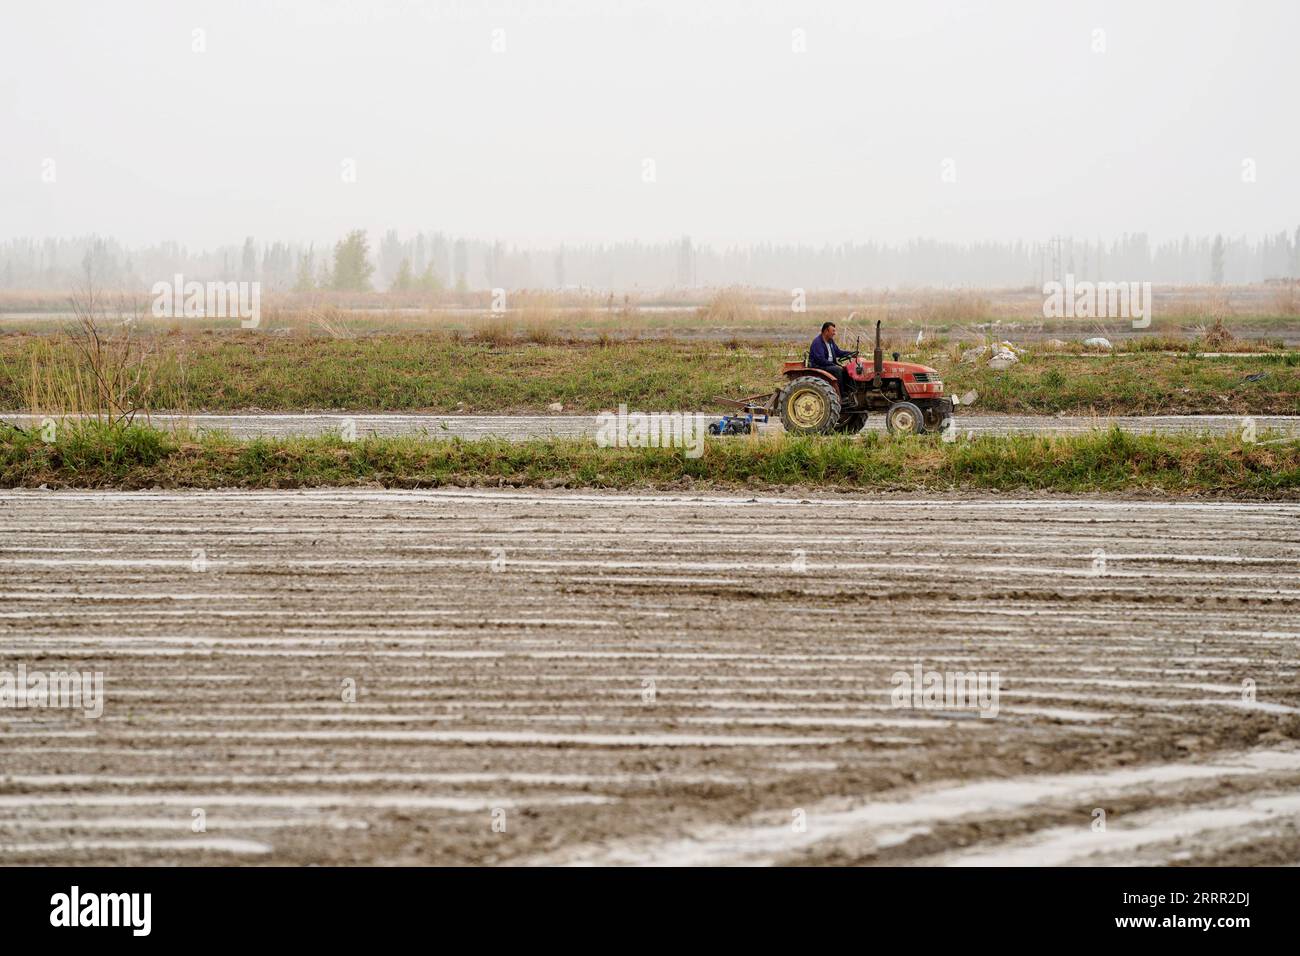 230427 -- YULI, 27 aprile 2023 -- Arkin Reyim guida un trattore per lavorare in un campo di cotone nel villaggio Bax Mali della contea di Yuli, regione autonoma dello Xinjiang Uygur della Cina nord-occidentale, 22 aprile 2023. Arkin Reyim è un coltivatore di cotone di 51 anni con più di 300 mu 20 ettari di campi di cotone nel villaggio di Bax Mali della contea di Yuli nello Xinjiang. Il coraggio e la visione unica di Arkin lo hanno spinto a iniziare a coltivare cotone nel 2004, quando si è sposato con la moglie Hasiyat Kasim. Da allora, Arkin si è dedicato alla coltivazione del cotone per oltre 10 anni, rendendolo così un cotone esperto Foto Stock